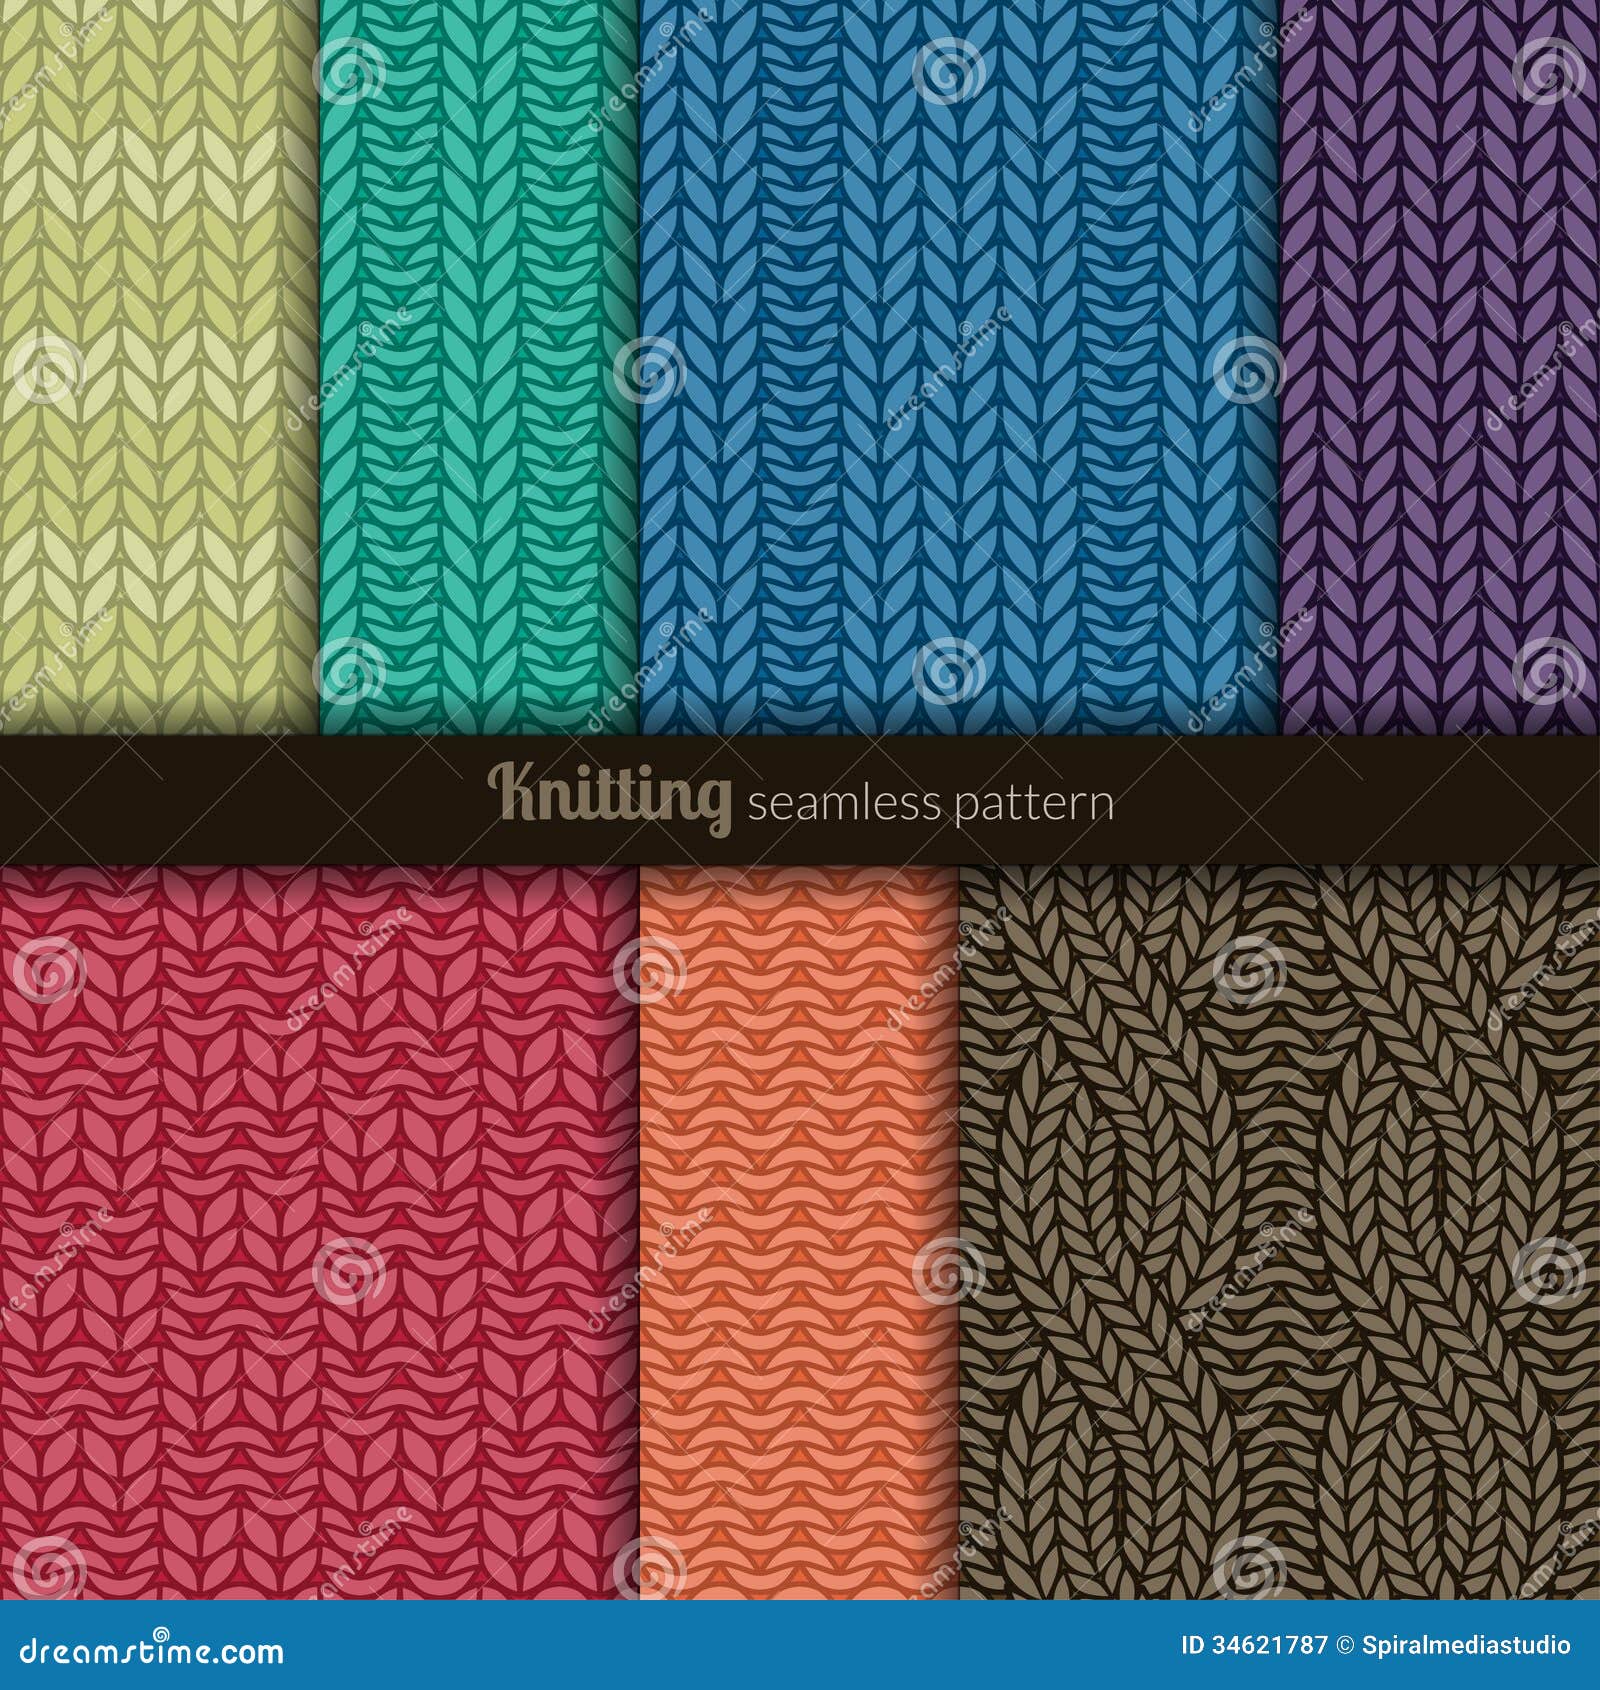 seamless patterns knitting style